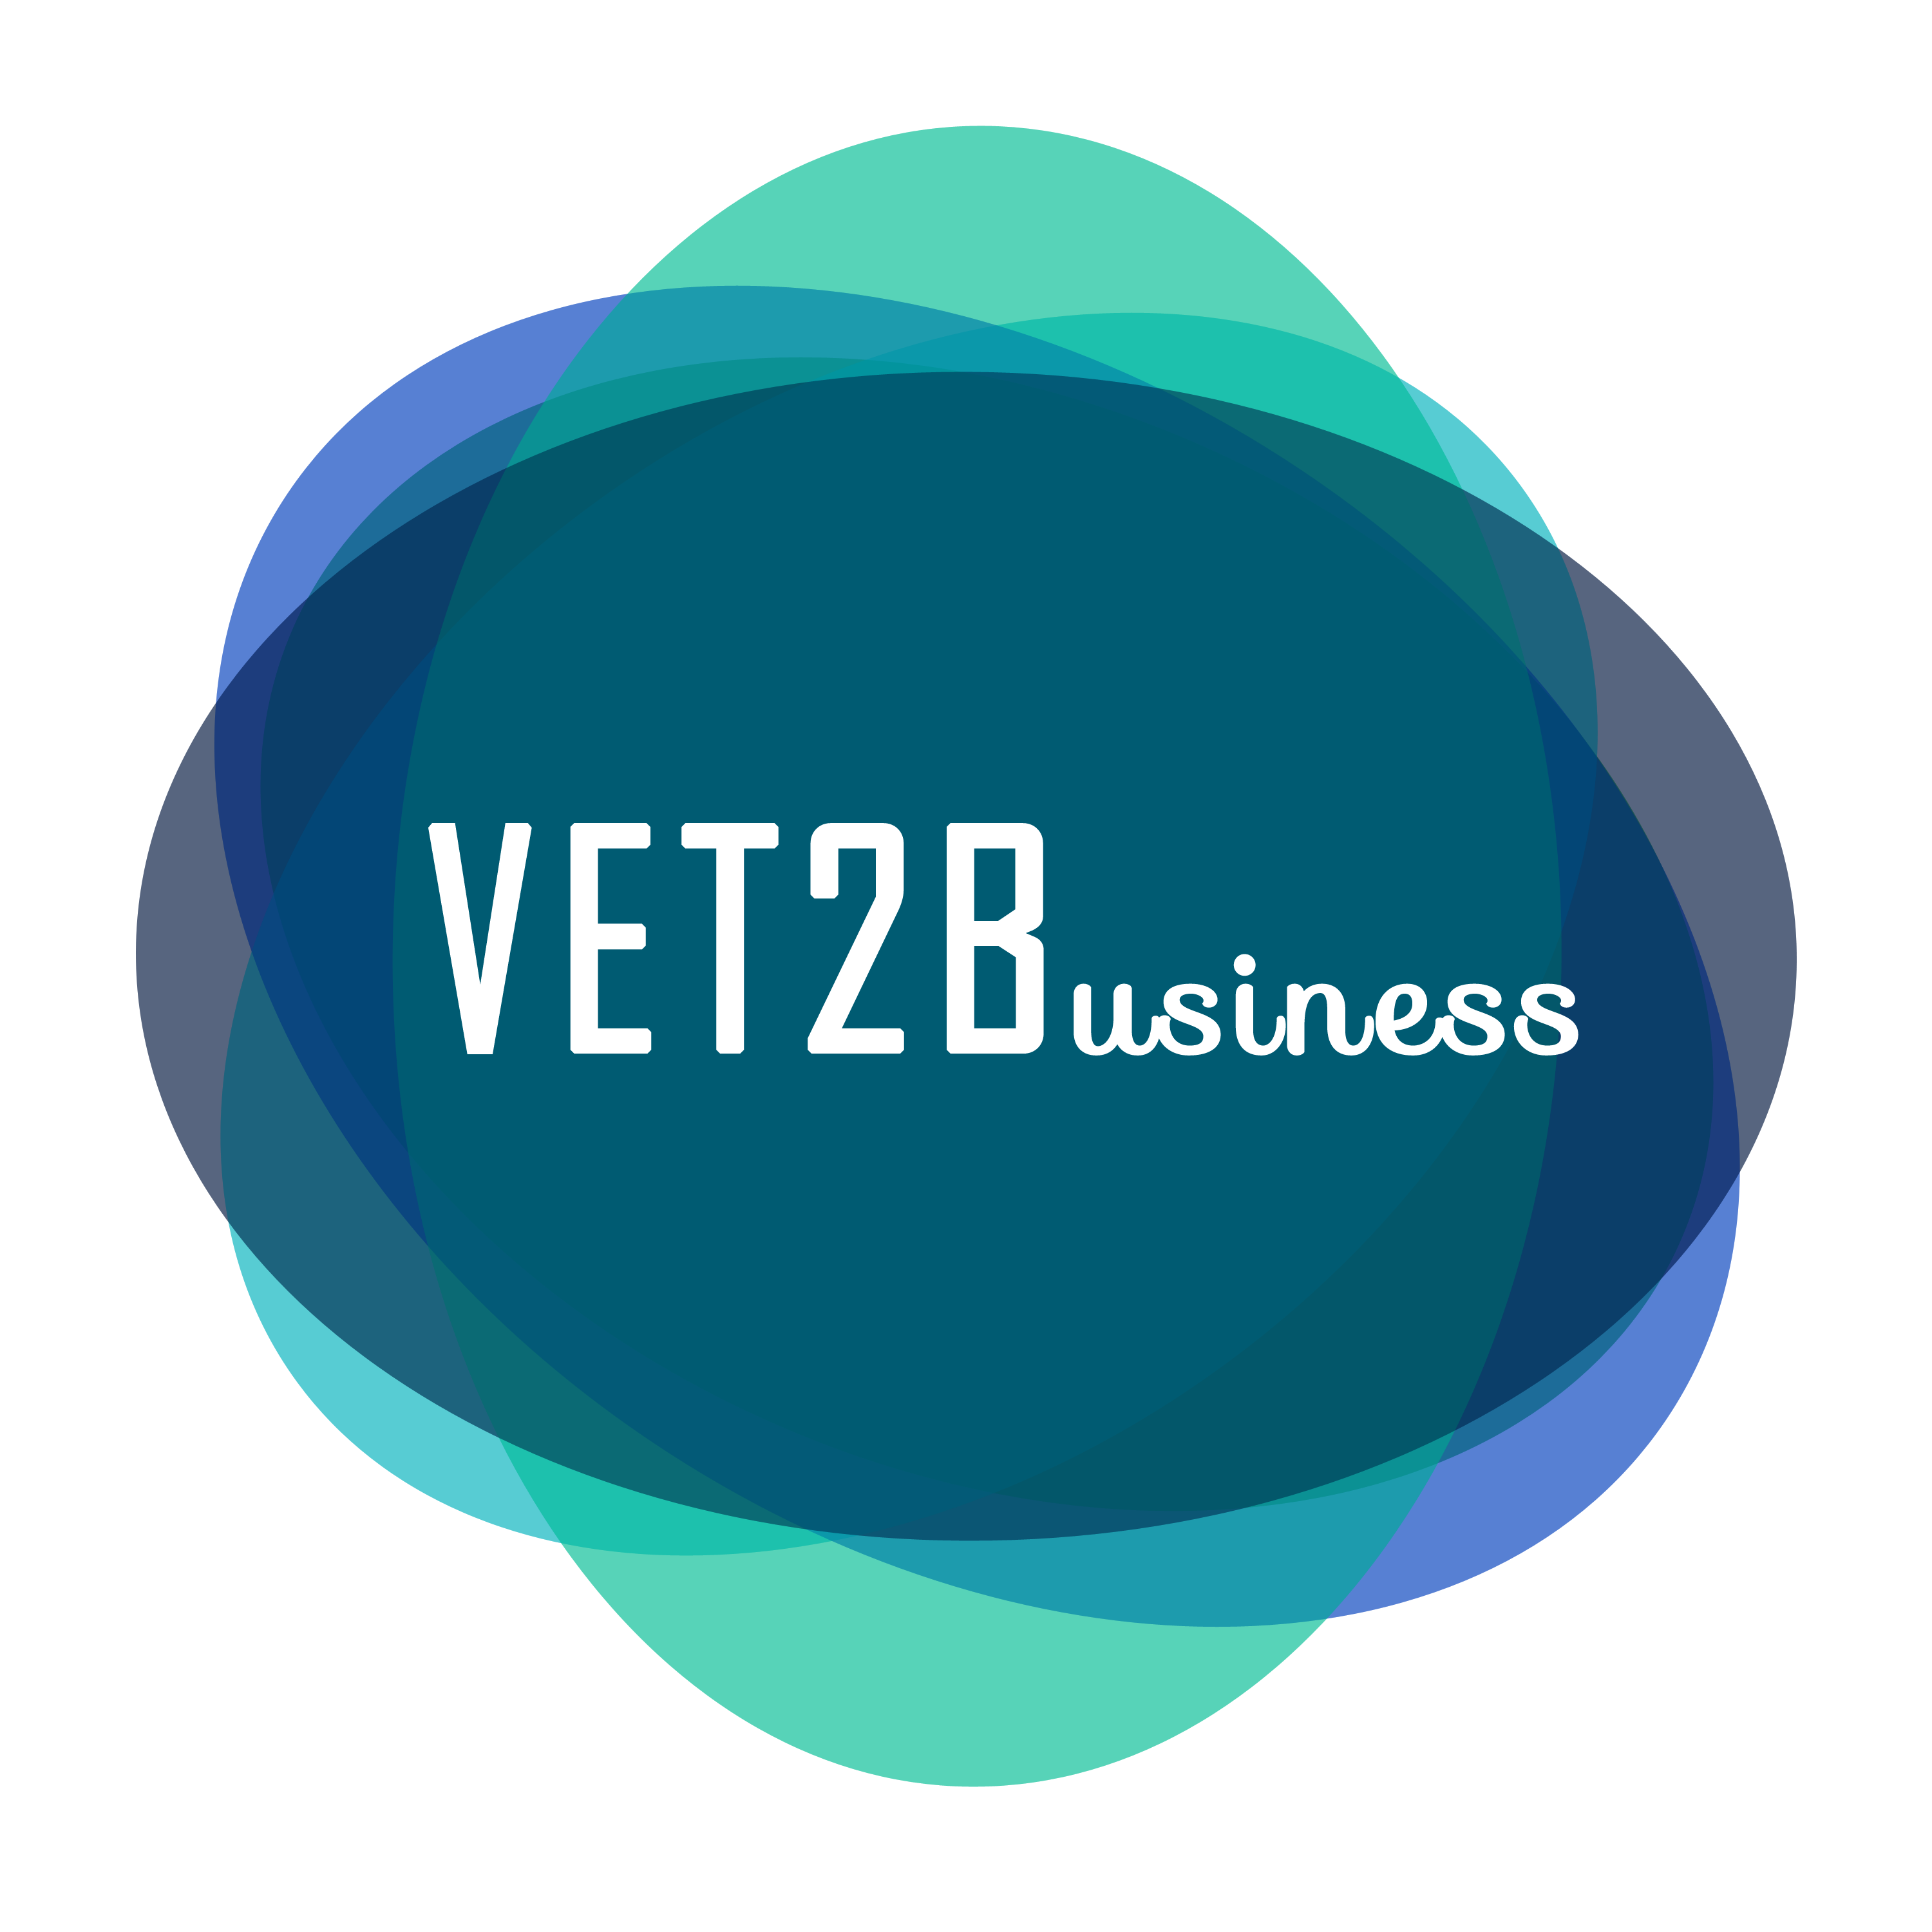 vet2business logo transp